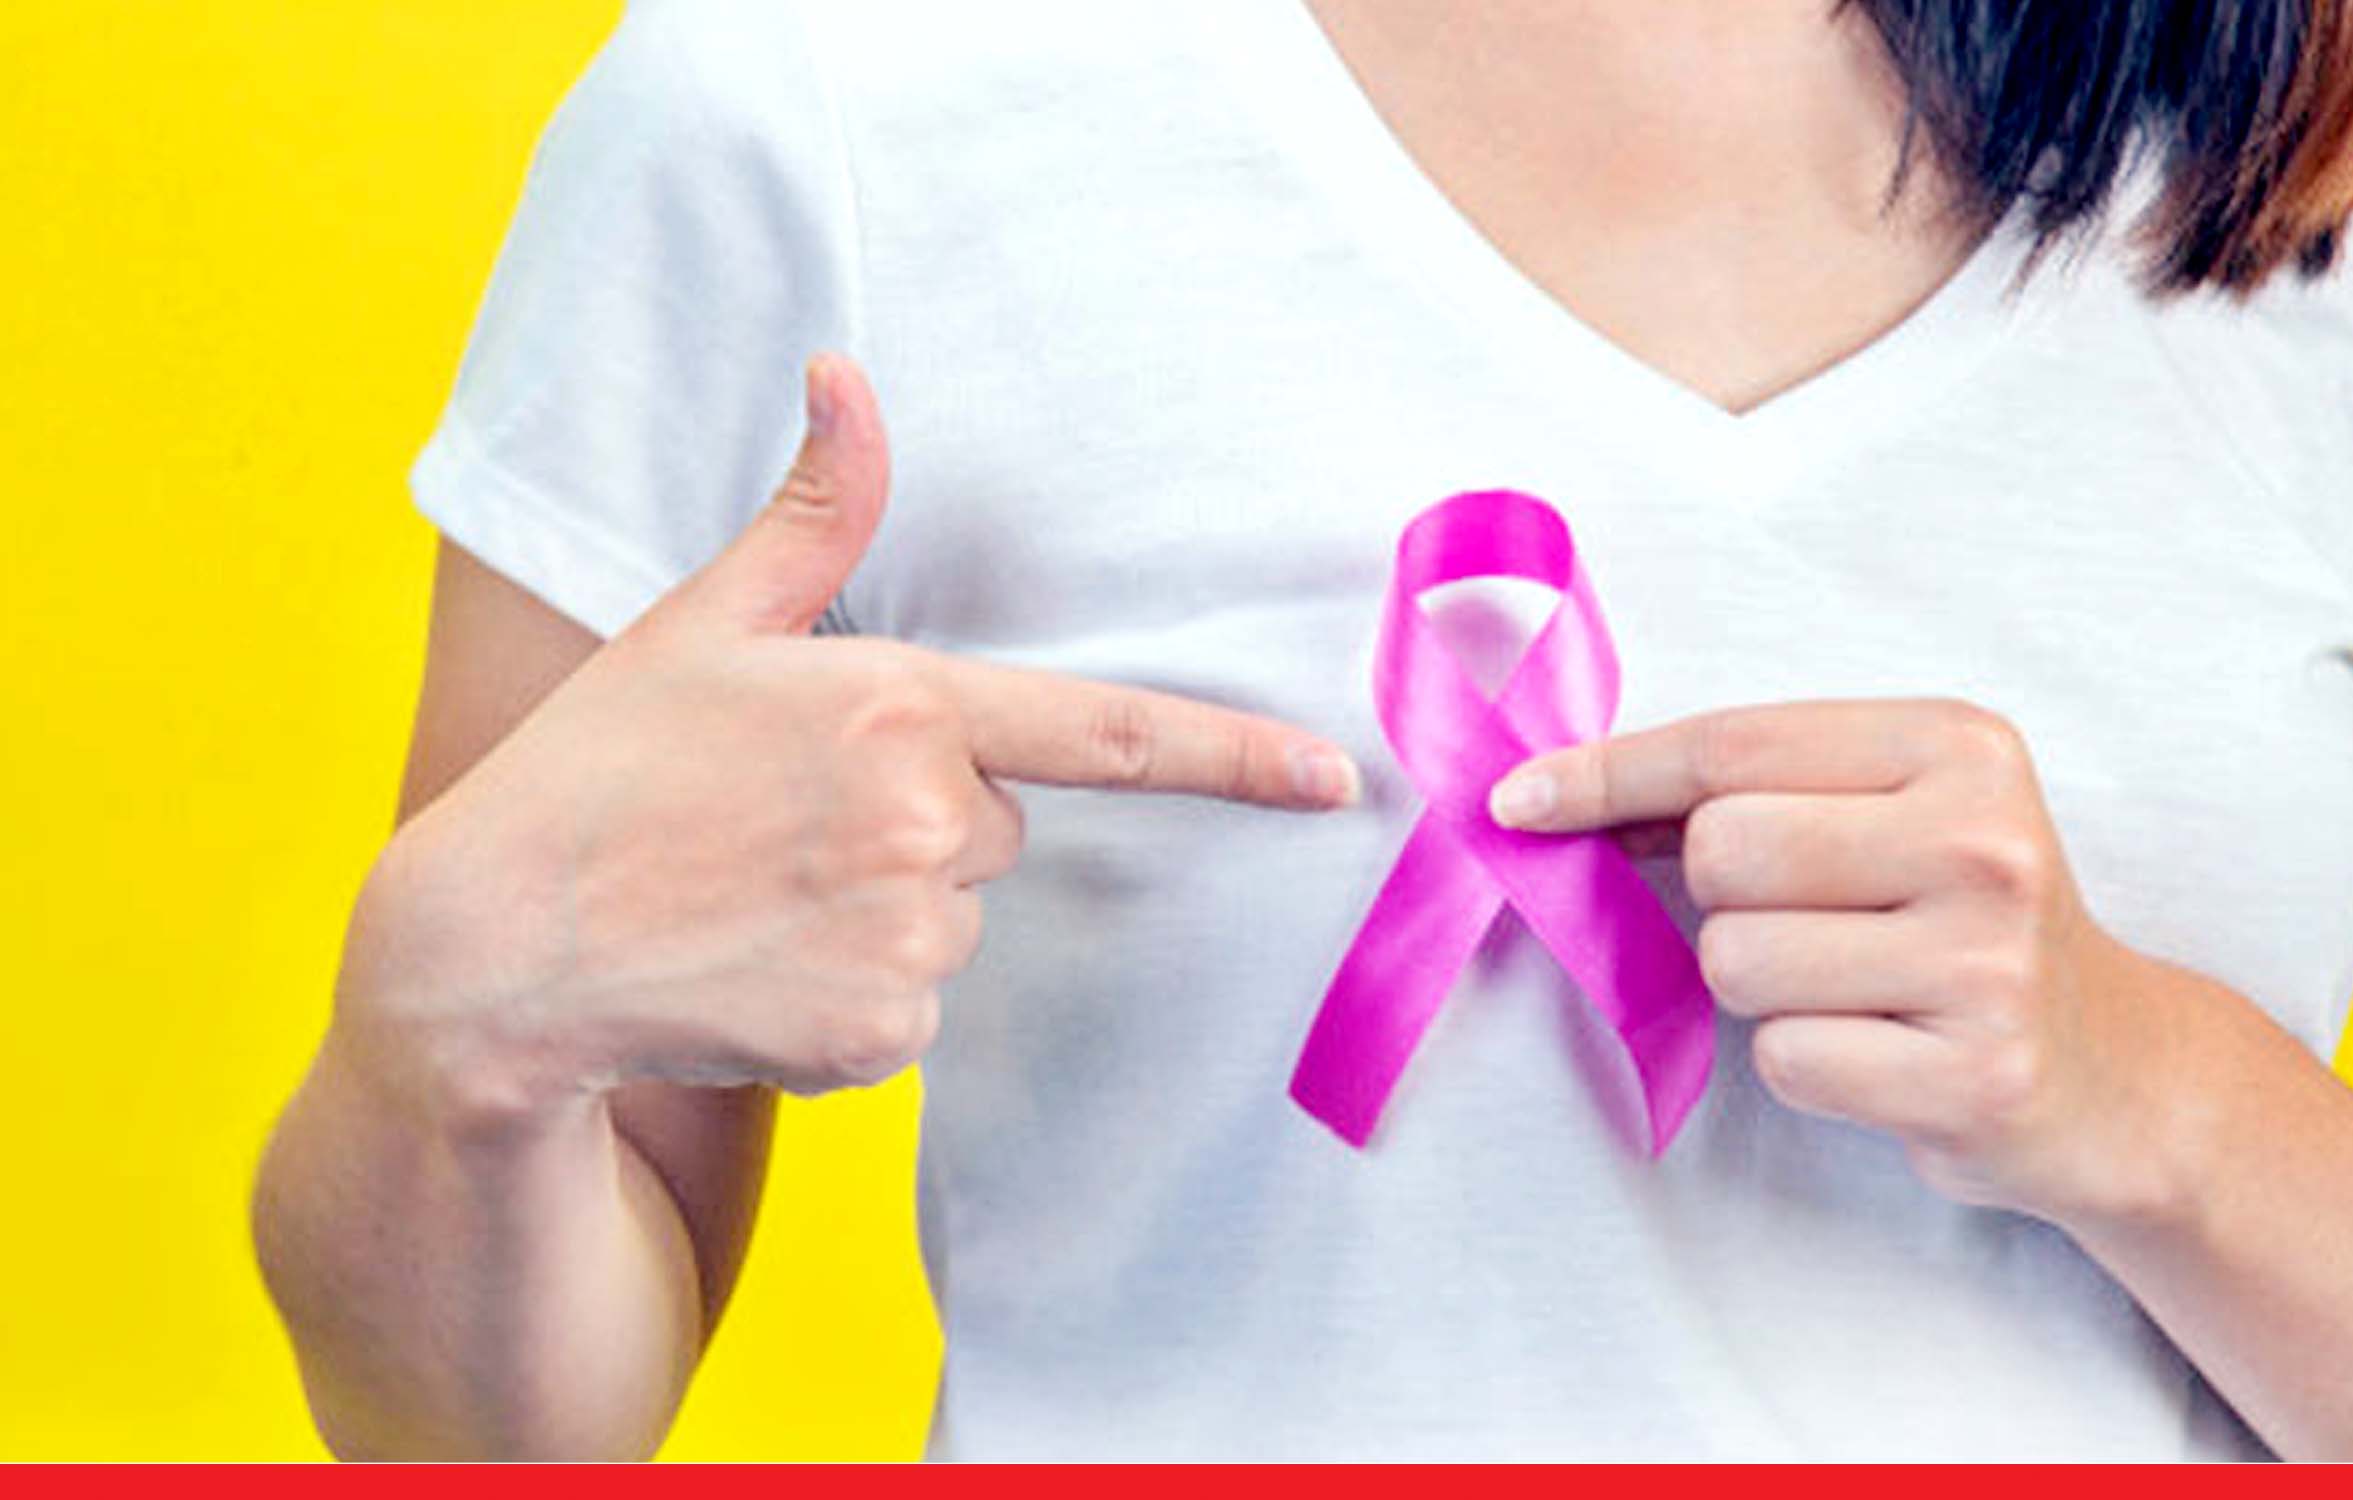 ब्रेस्ट कैंसर को लेकर रहे सतर्क, इन लक्षणों के दिखते ही तुरंत कराएं जांच